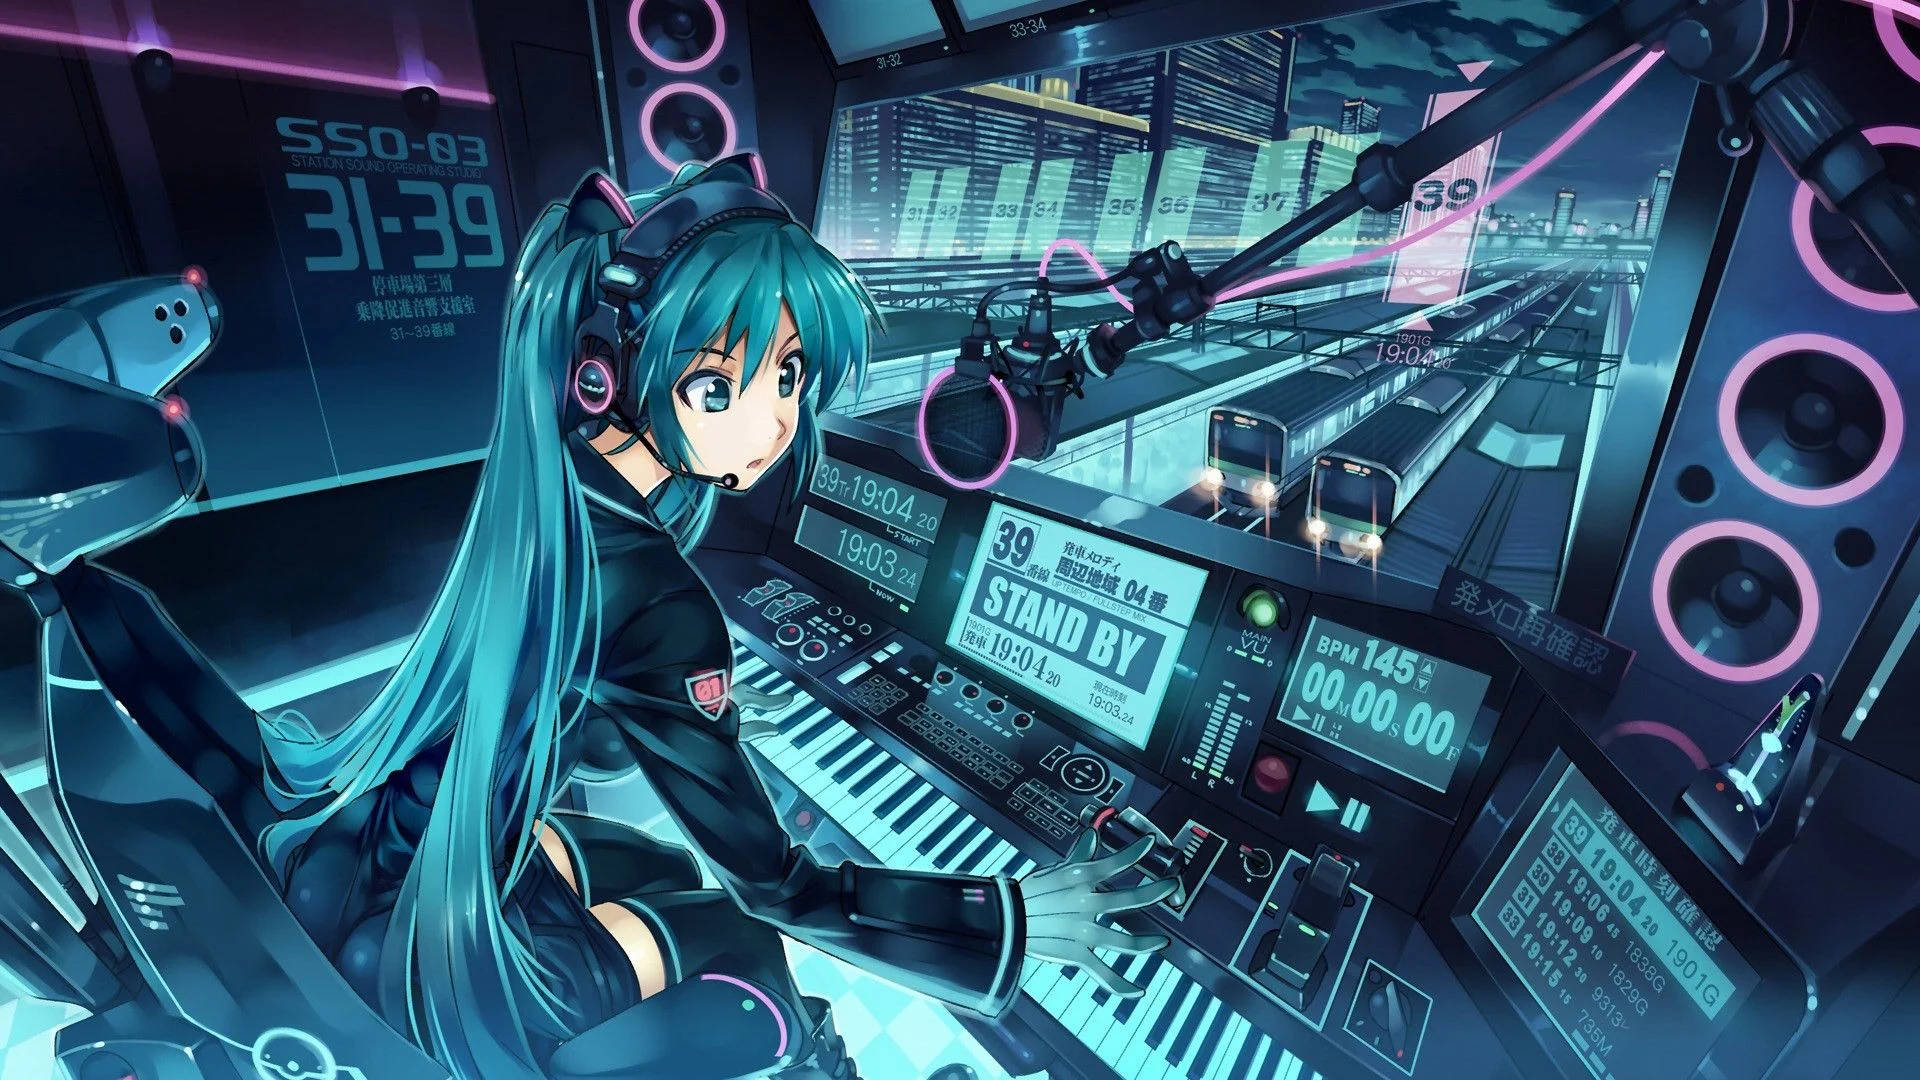 Anime Girl With Laptop Music Studio Setup